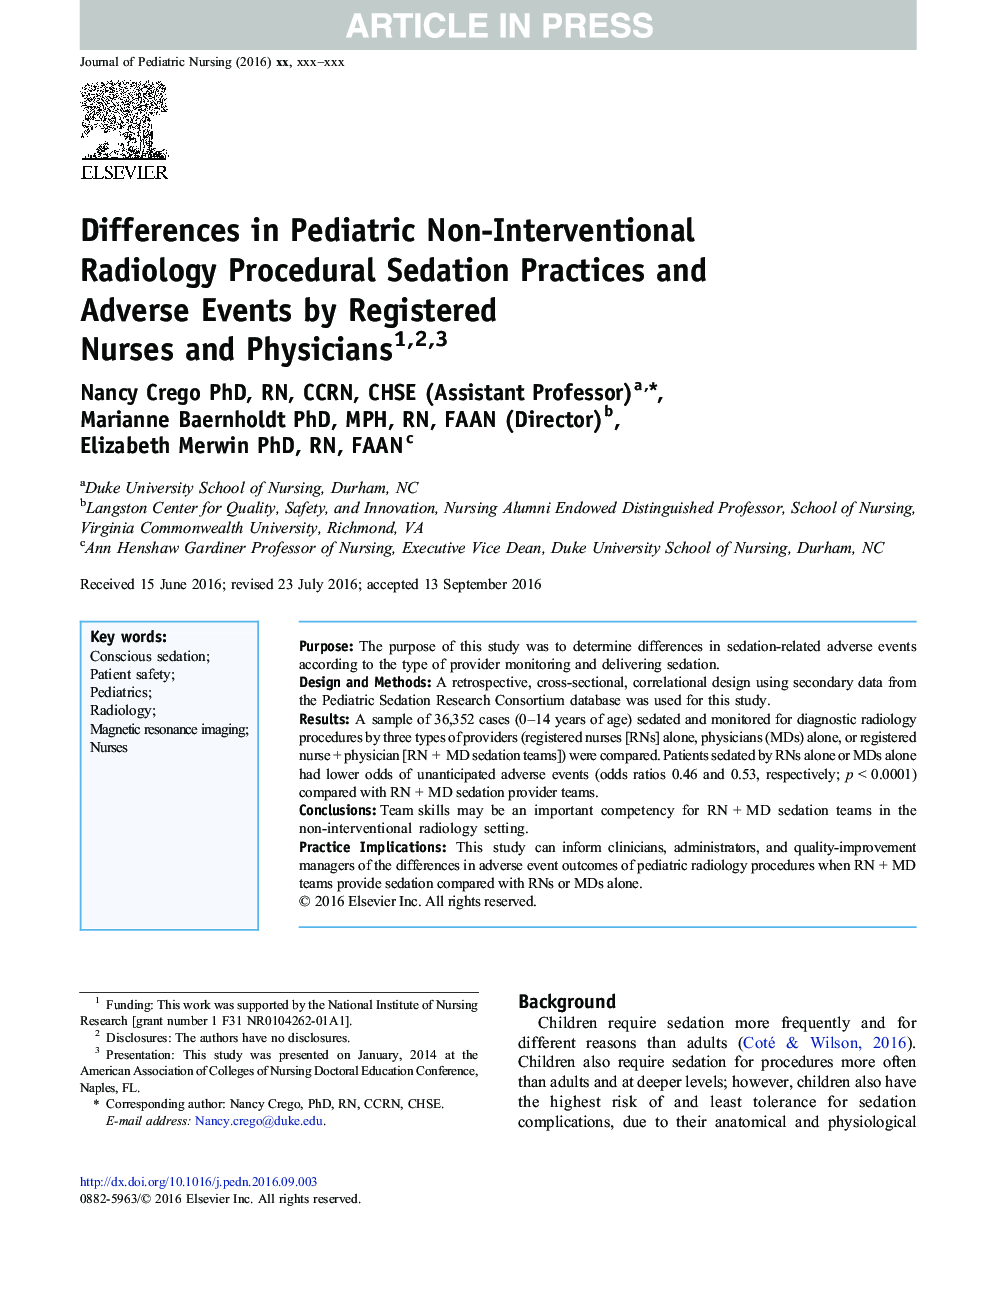 تفاوت در روشهای روانشناختی کودکان و رویدادهای ناخواسته توسط پرستاران و پزشکان ثبت شده 